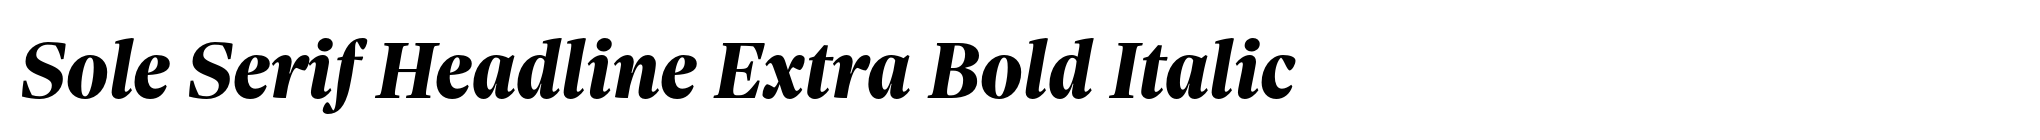 Sole Serif Headline Extra Bold Italic image